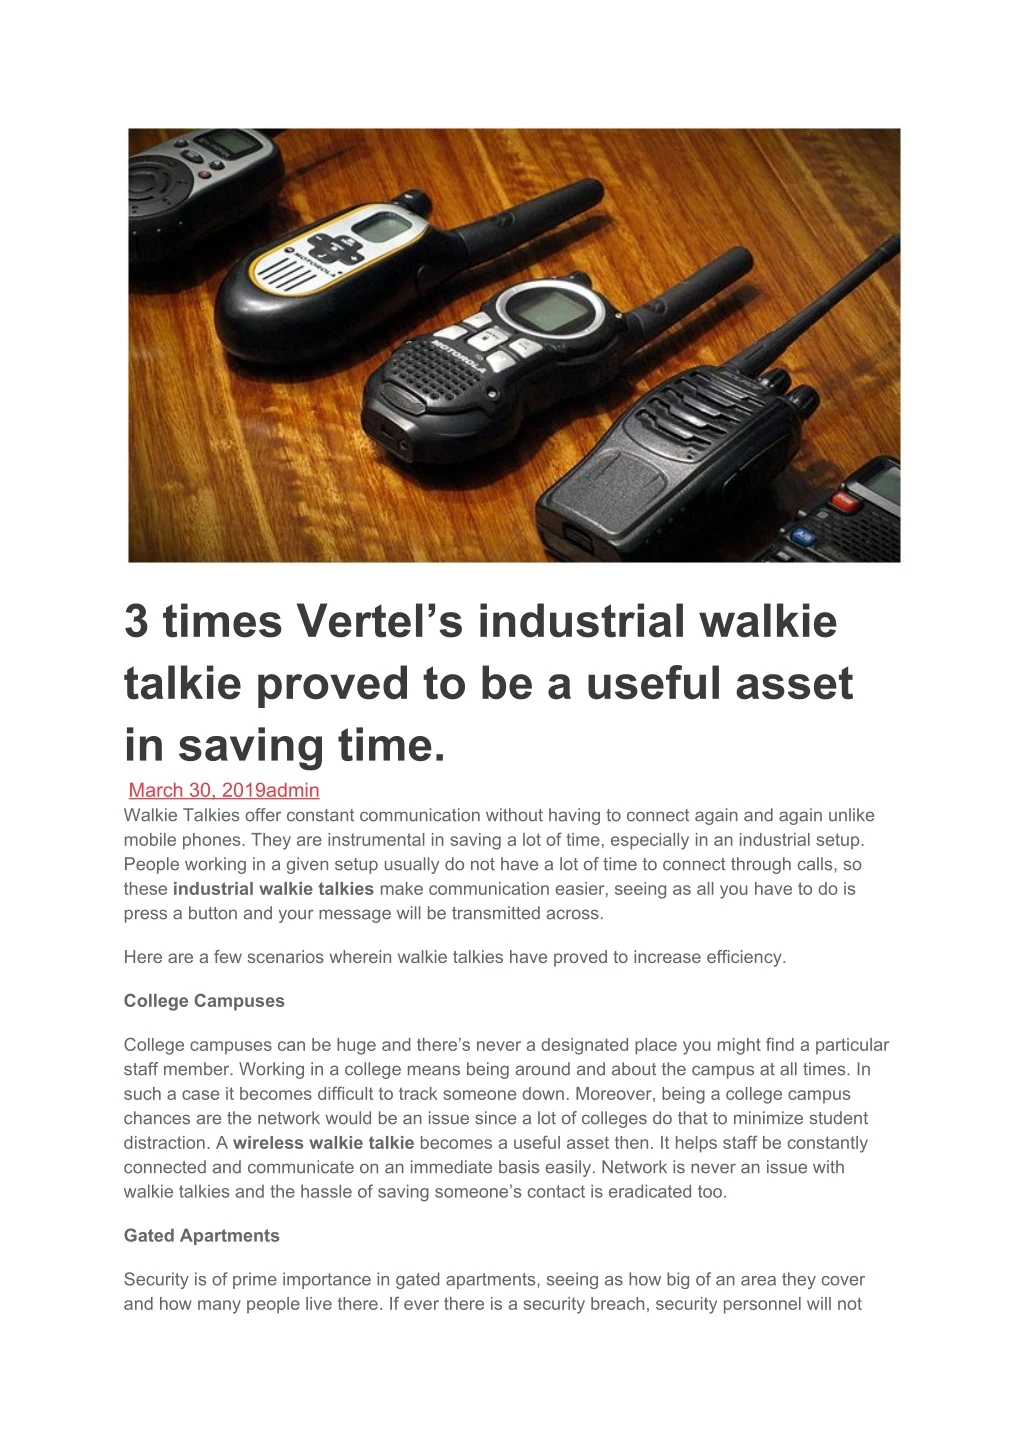 3 times vertel s industrial walkie talkie proved